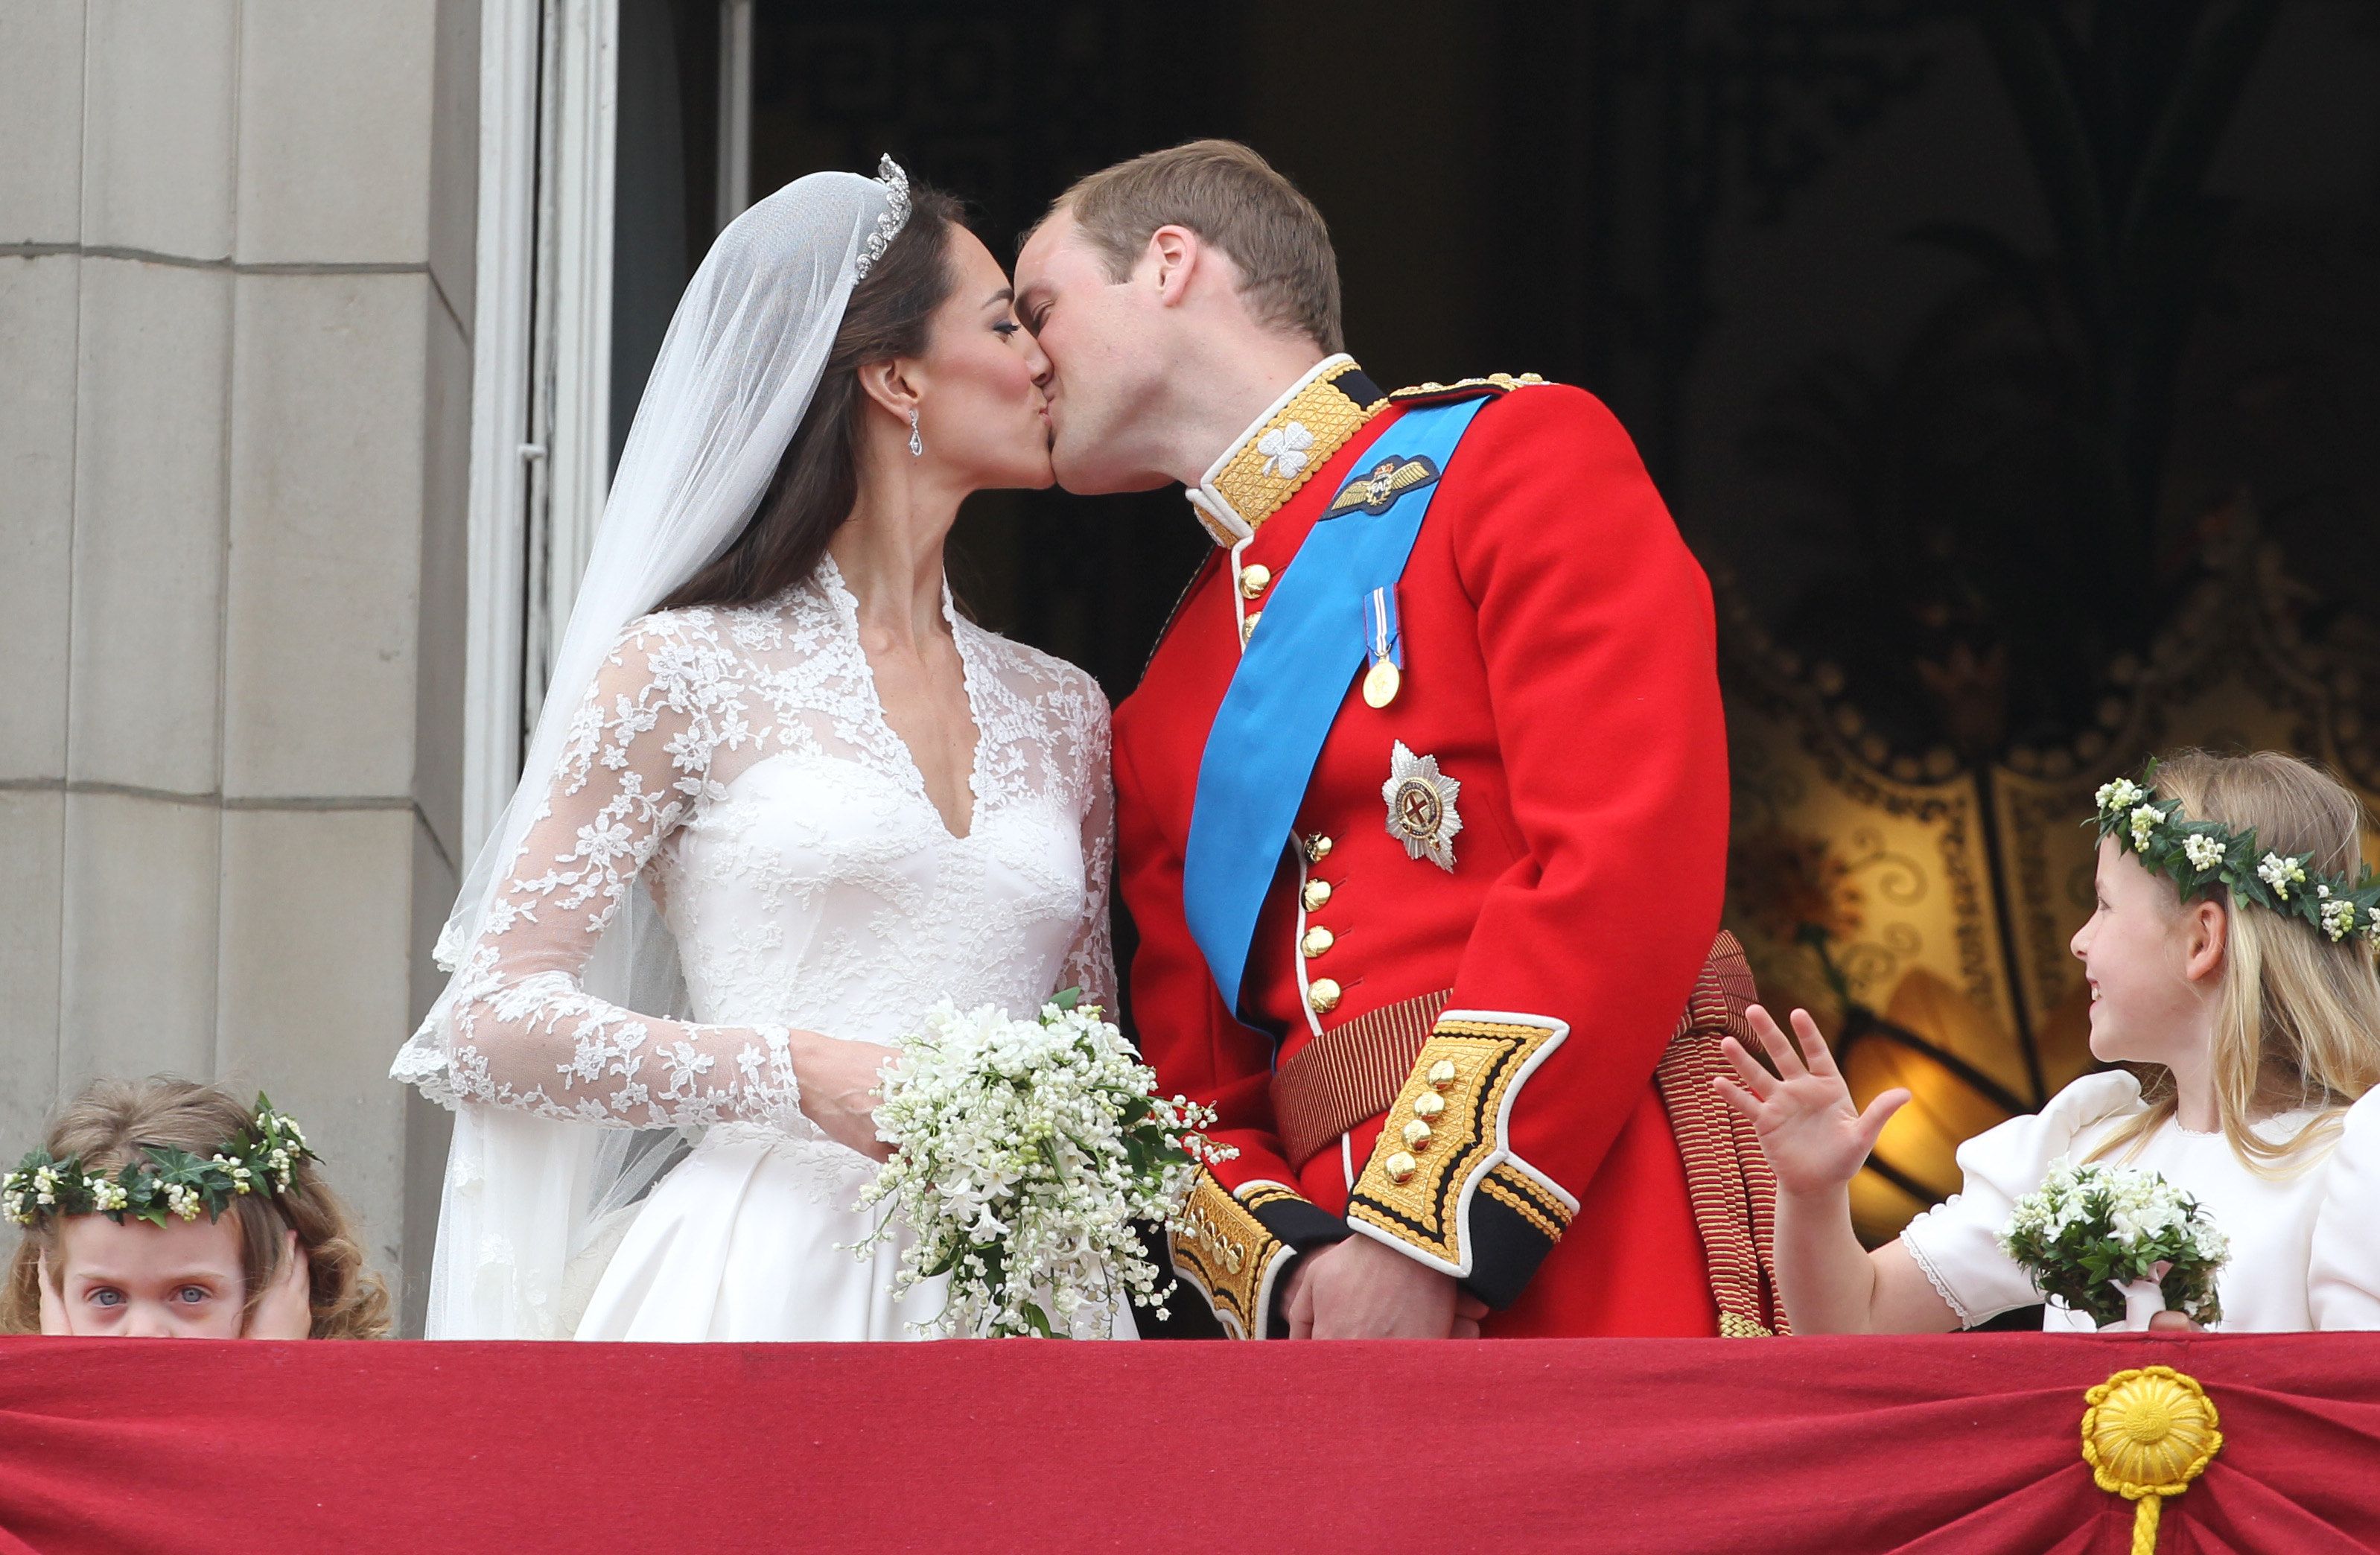 Кейт Миддлтон и принц Уильям празднуют 13-ю годовщину свадьбы - интересные факты об их празднике